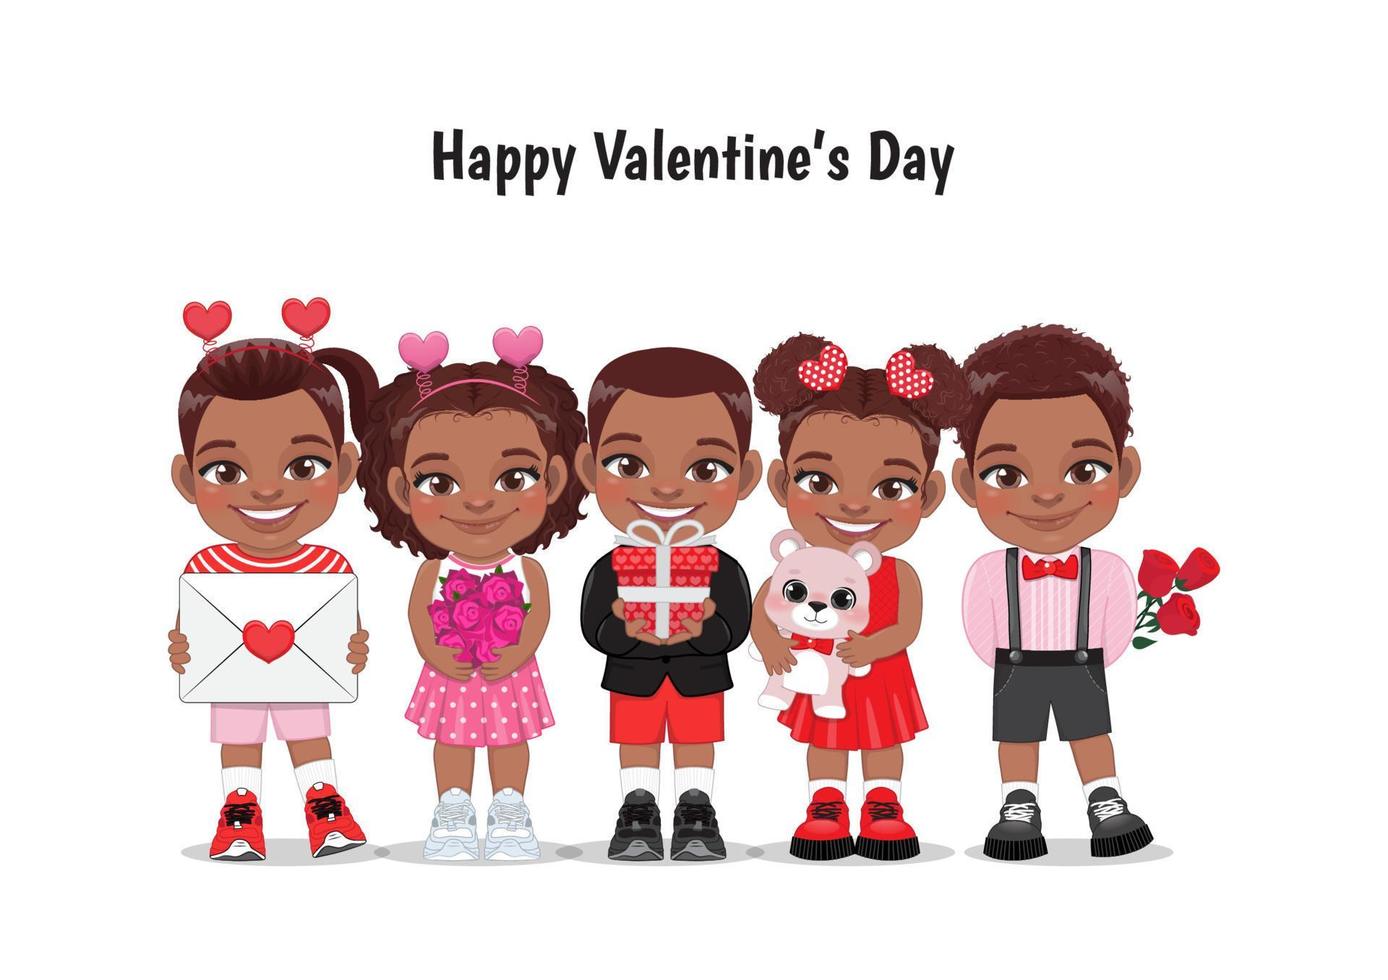 enfants afro-américains de la saint-valentin avec des petits garçons et filles noirs multiculturels datant, célébrant l'illustration vectorielle plane de la saint-valentin. vecteur de personnages de dessins animés de jeunes copines et copains.